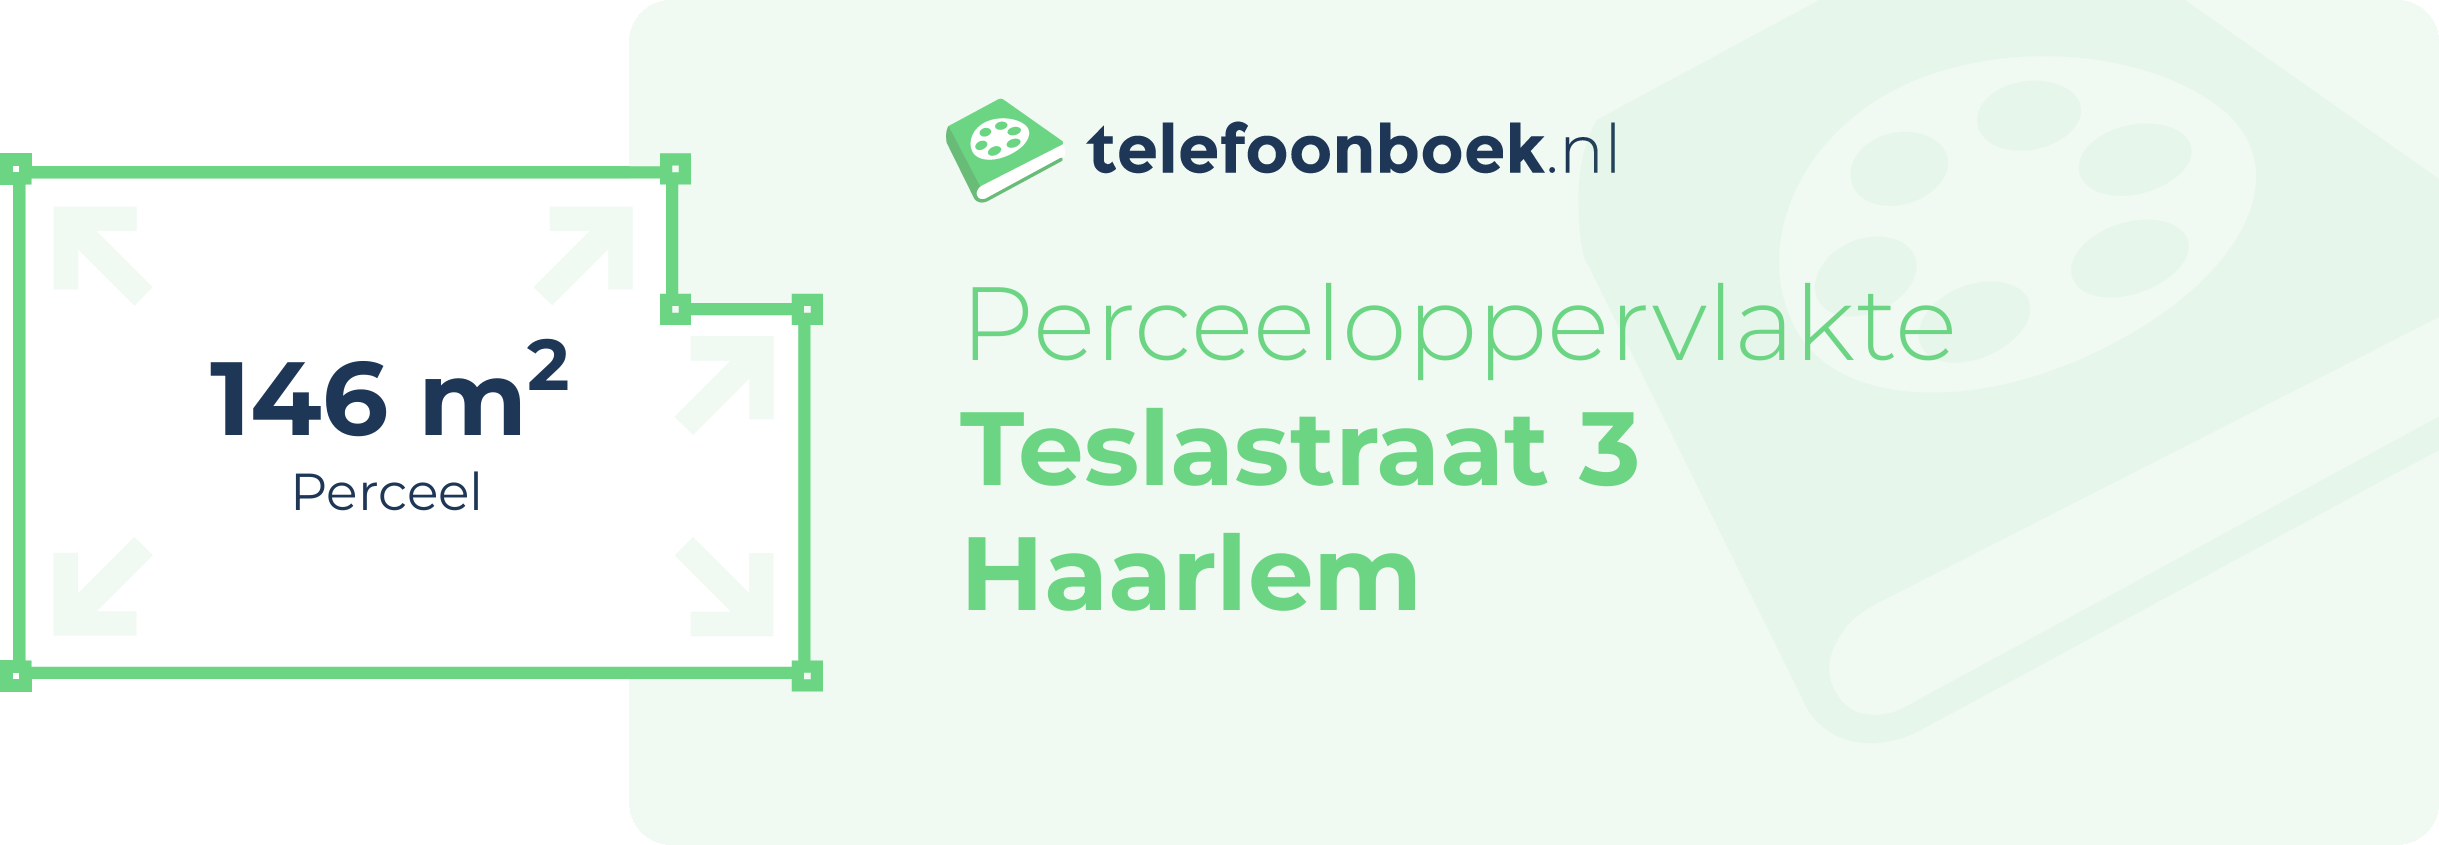 Perceeloppervlakte Teslastraat 3 Haarlem